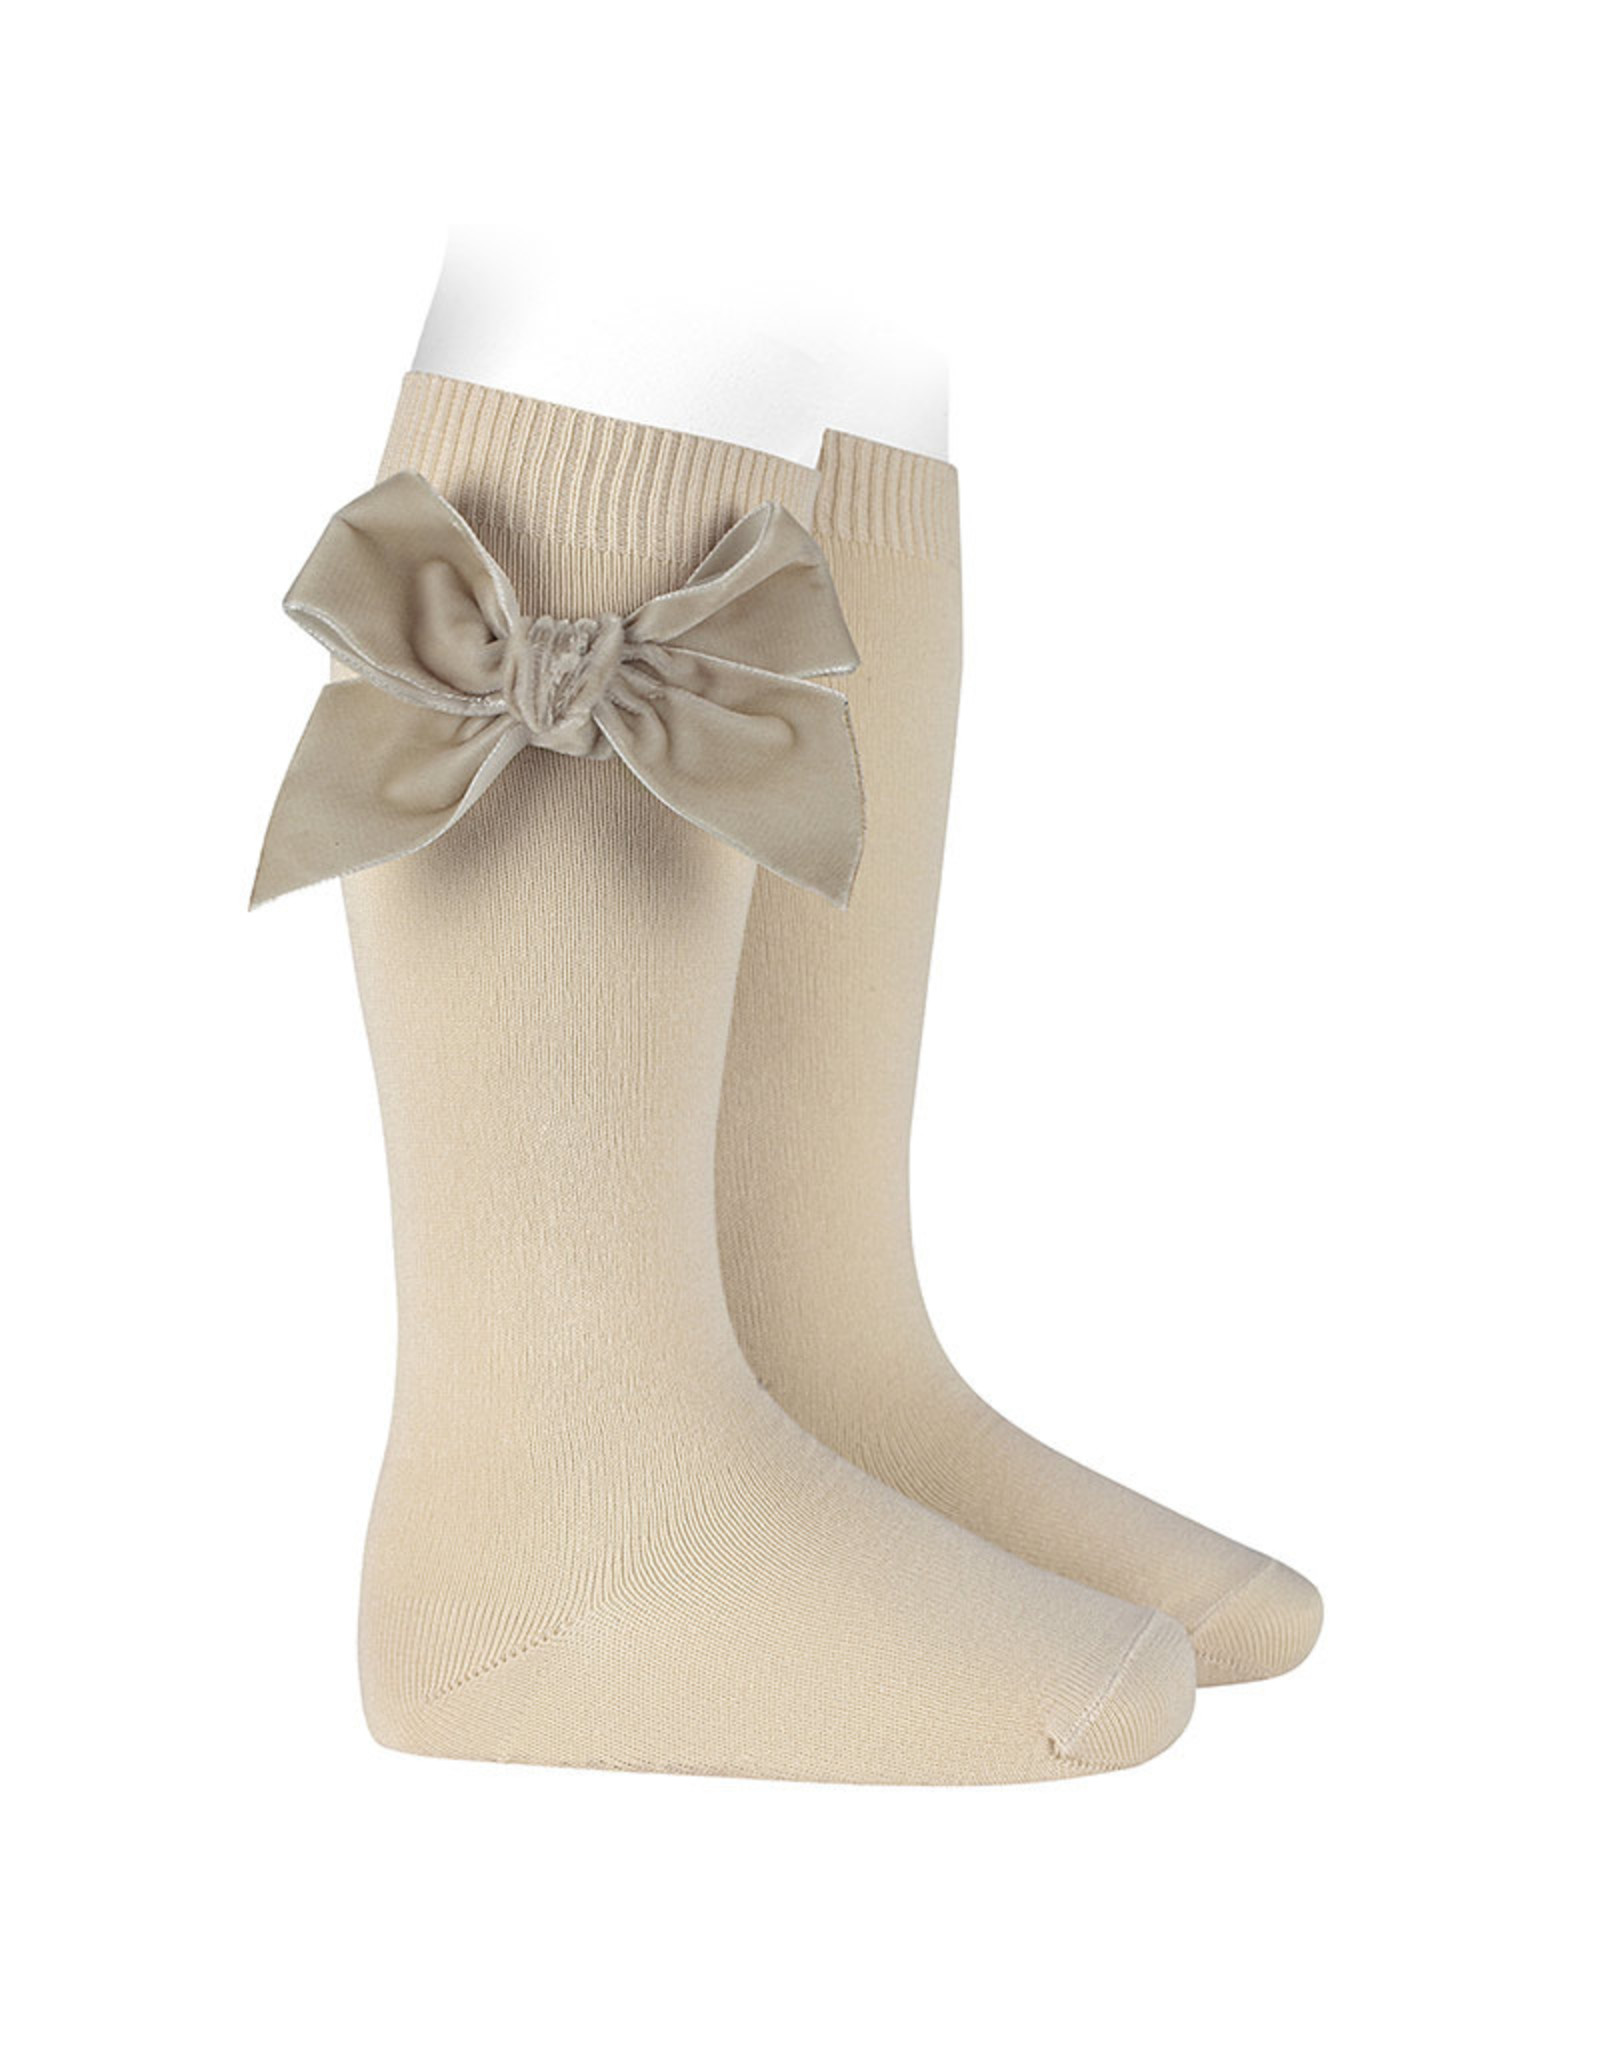 CONDOR Linen Velvet Bow Socks - Devoted Touch